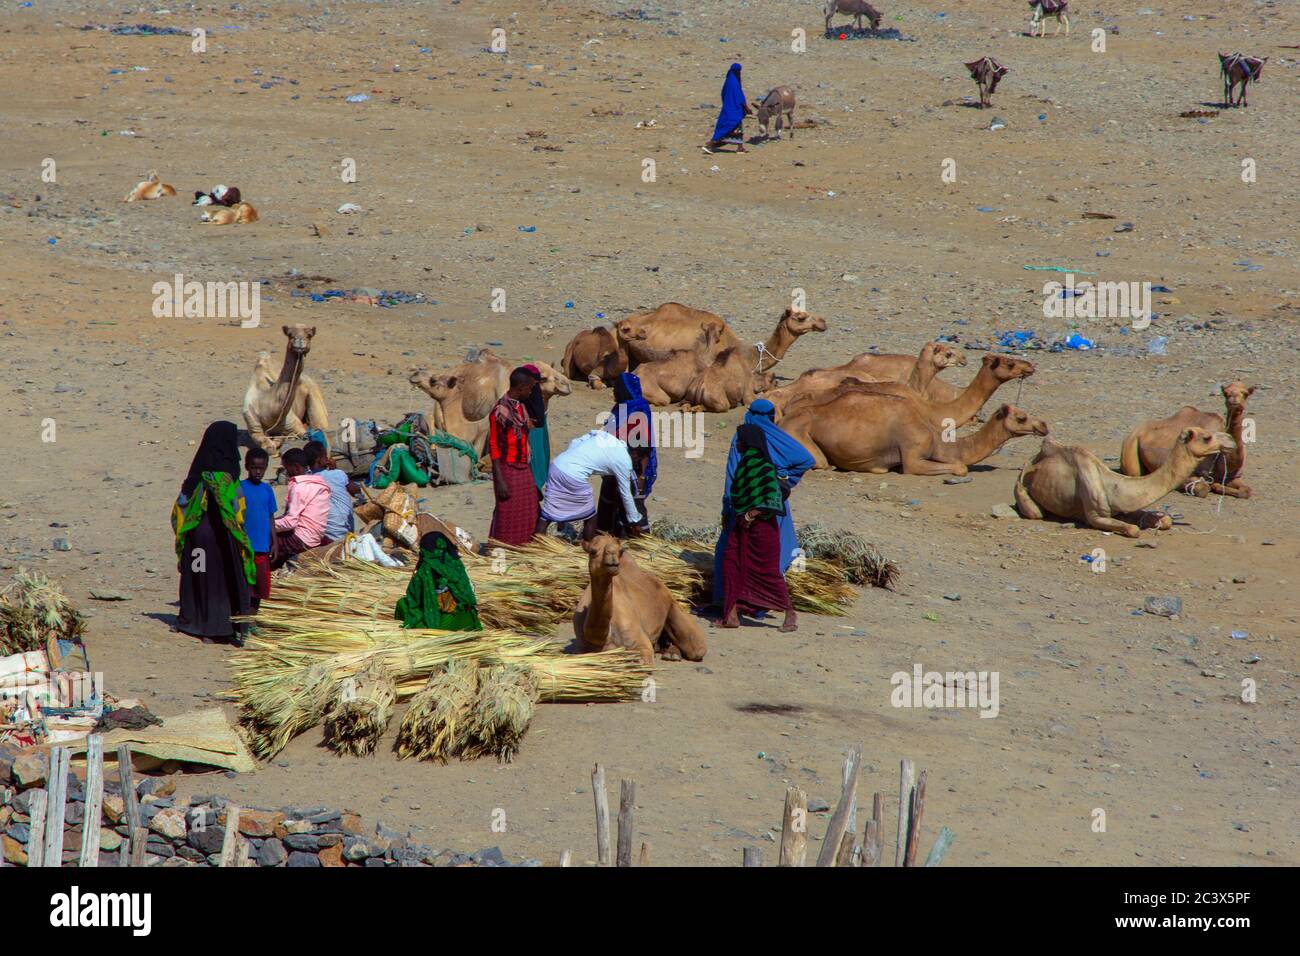 Hamedela, Ethiopie - novembre 2018: Marché de village avec des marchandises et des chameaux dans la région d'Afar, Ethiopie Banque D'Images